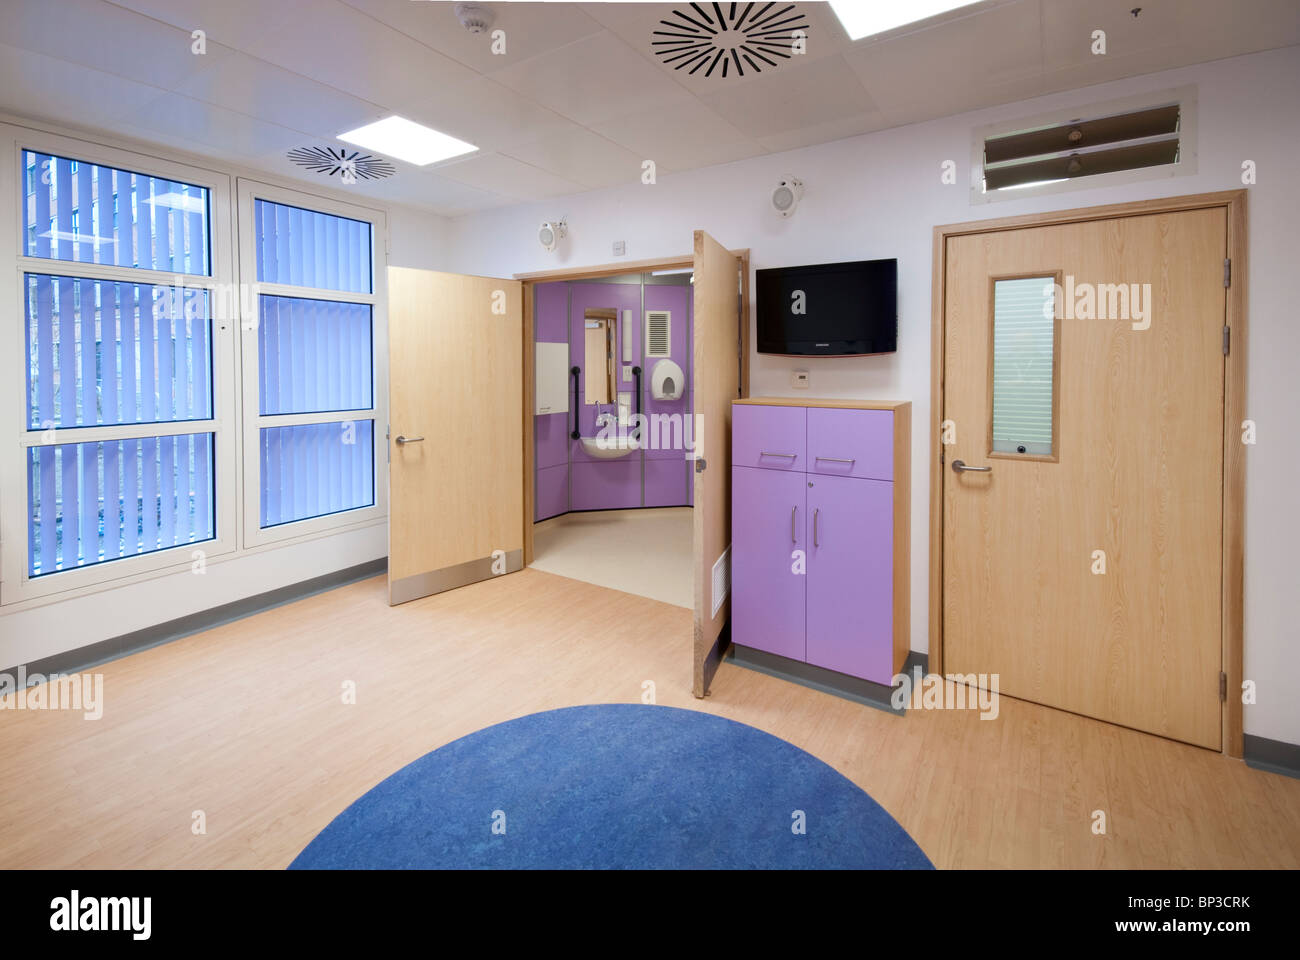 Southampton Krankenhaus hämatologischen Abteilung Einzelzimmer Stockfoto